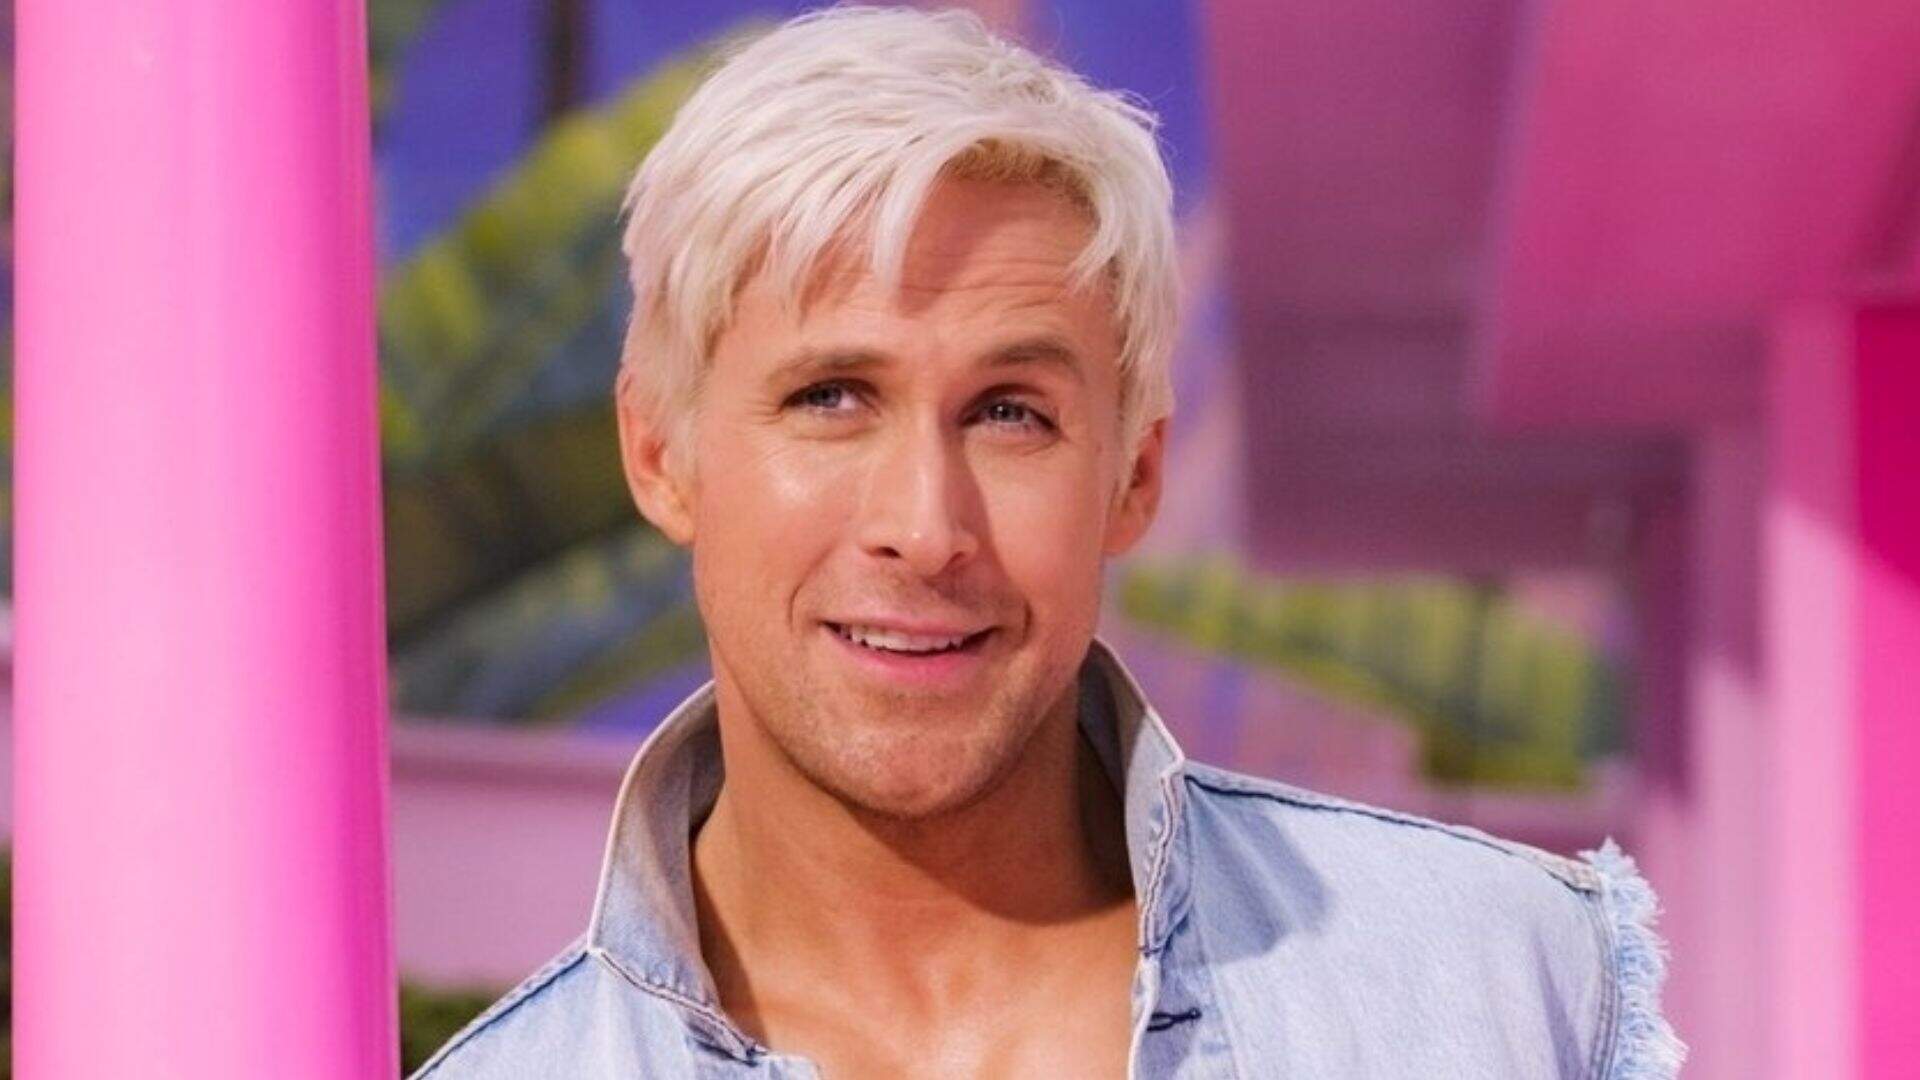 Música cantada por Ryan Gosling em ‘Barbie’ estoura nas paradas musicais; relembre outro hit famoso do ator - Metropolitana FM